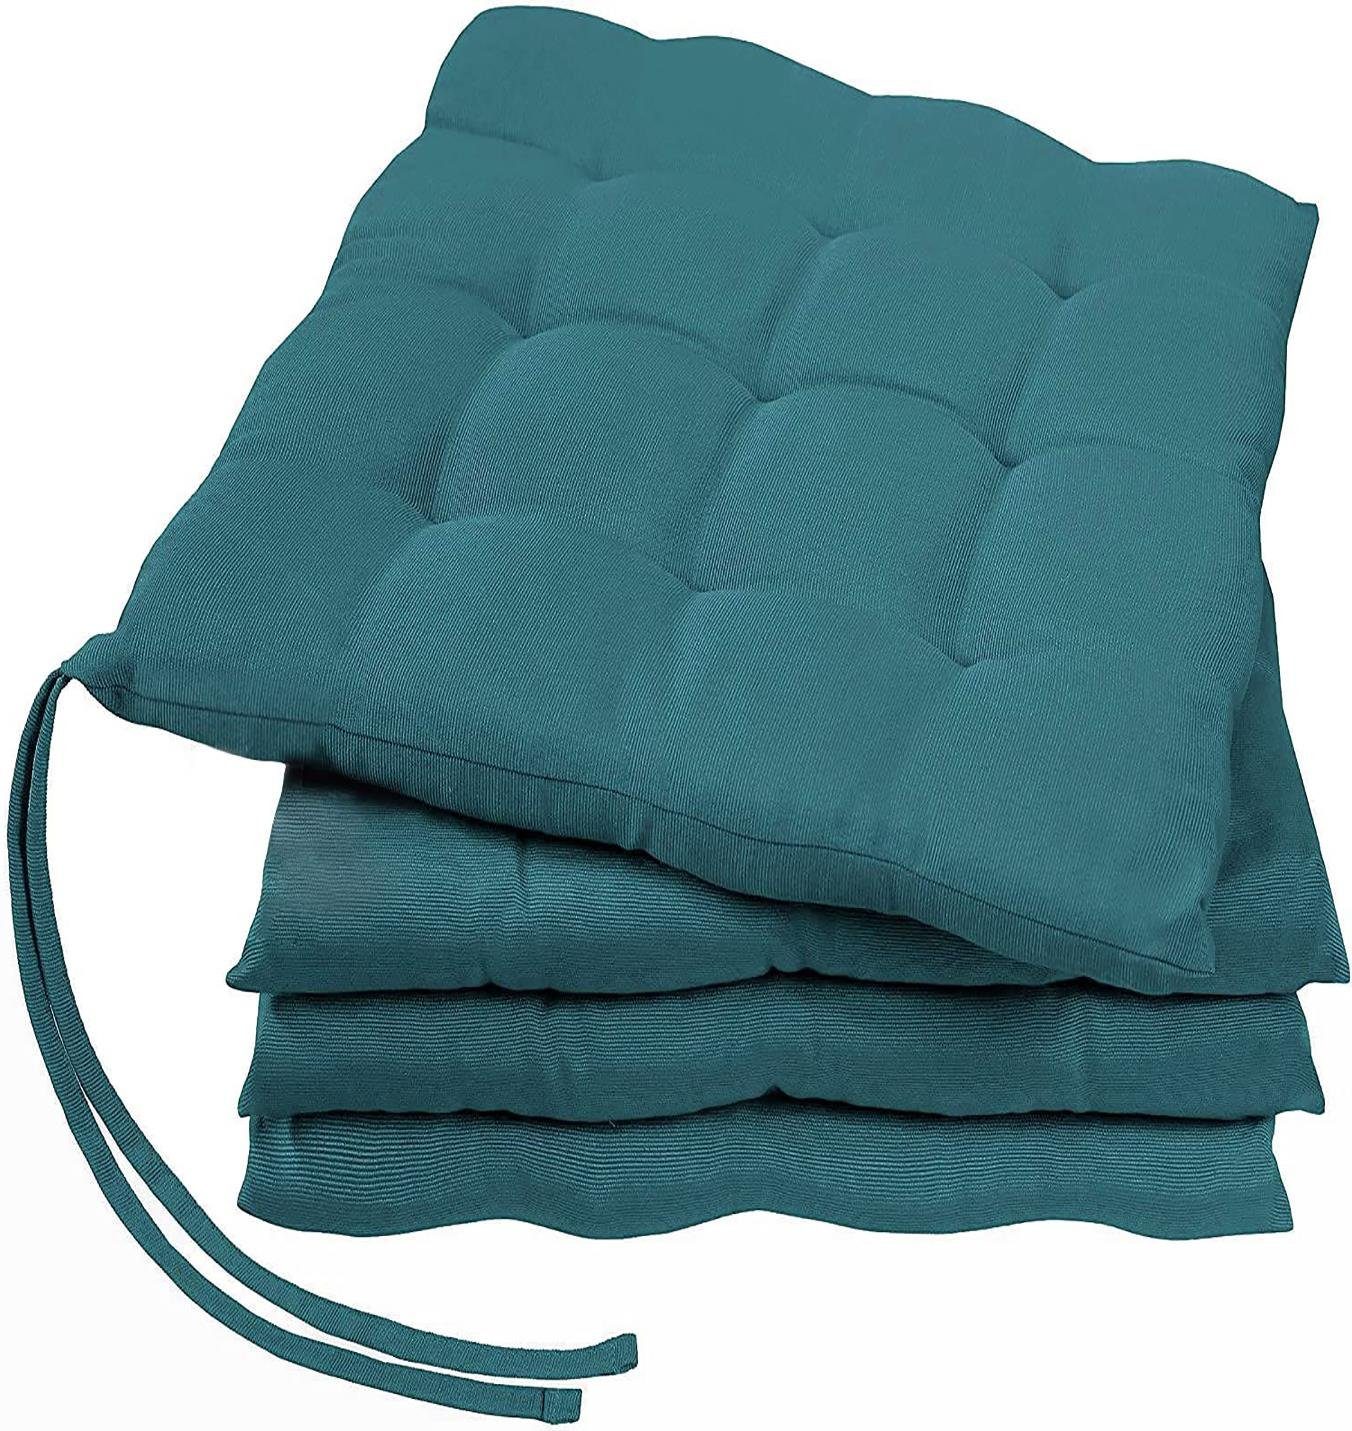 GREEN MARK Textilien Sitzkissen Sitzkissen, Stuhlkissen für Außen oder Innen, weich gefüllt, 40x40cm Petrol